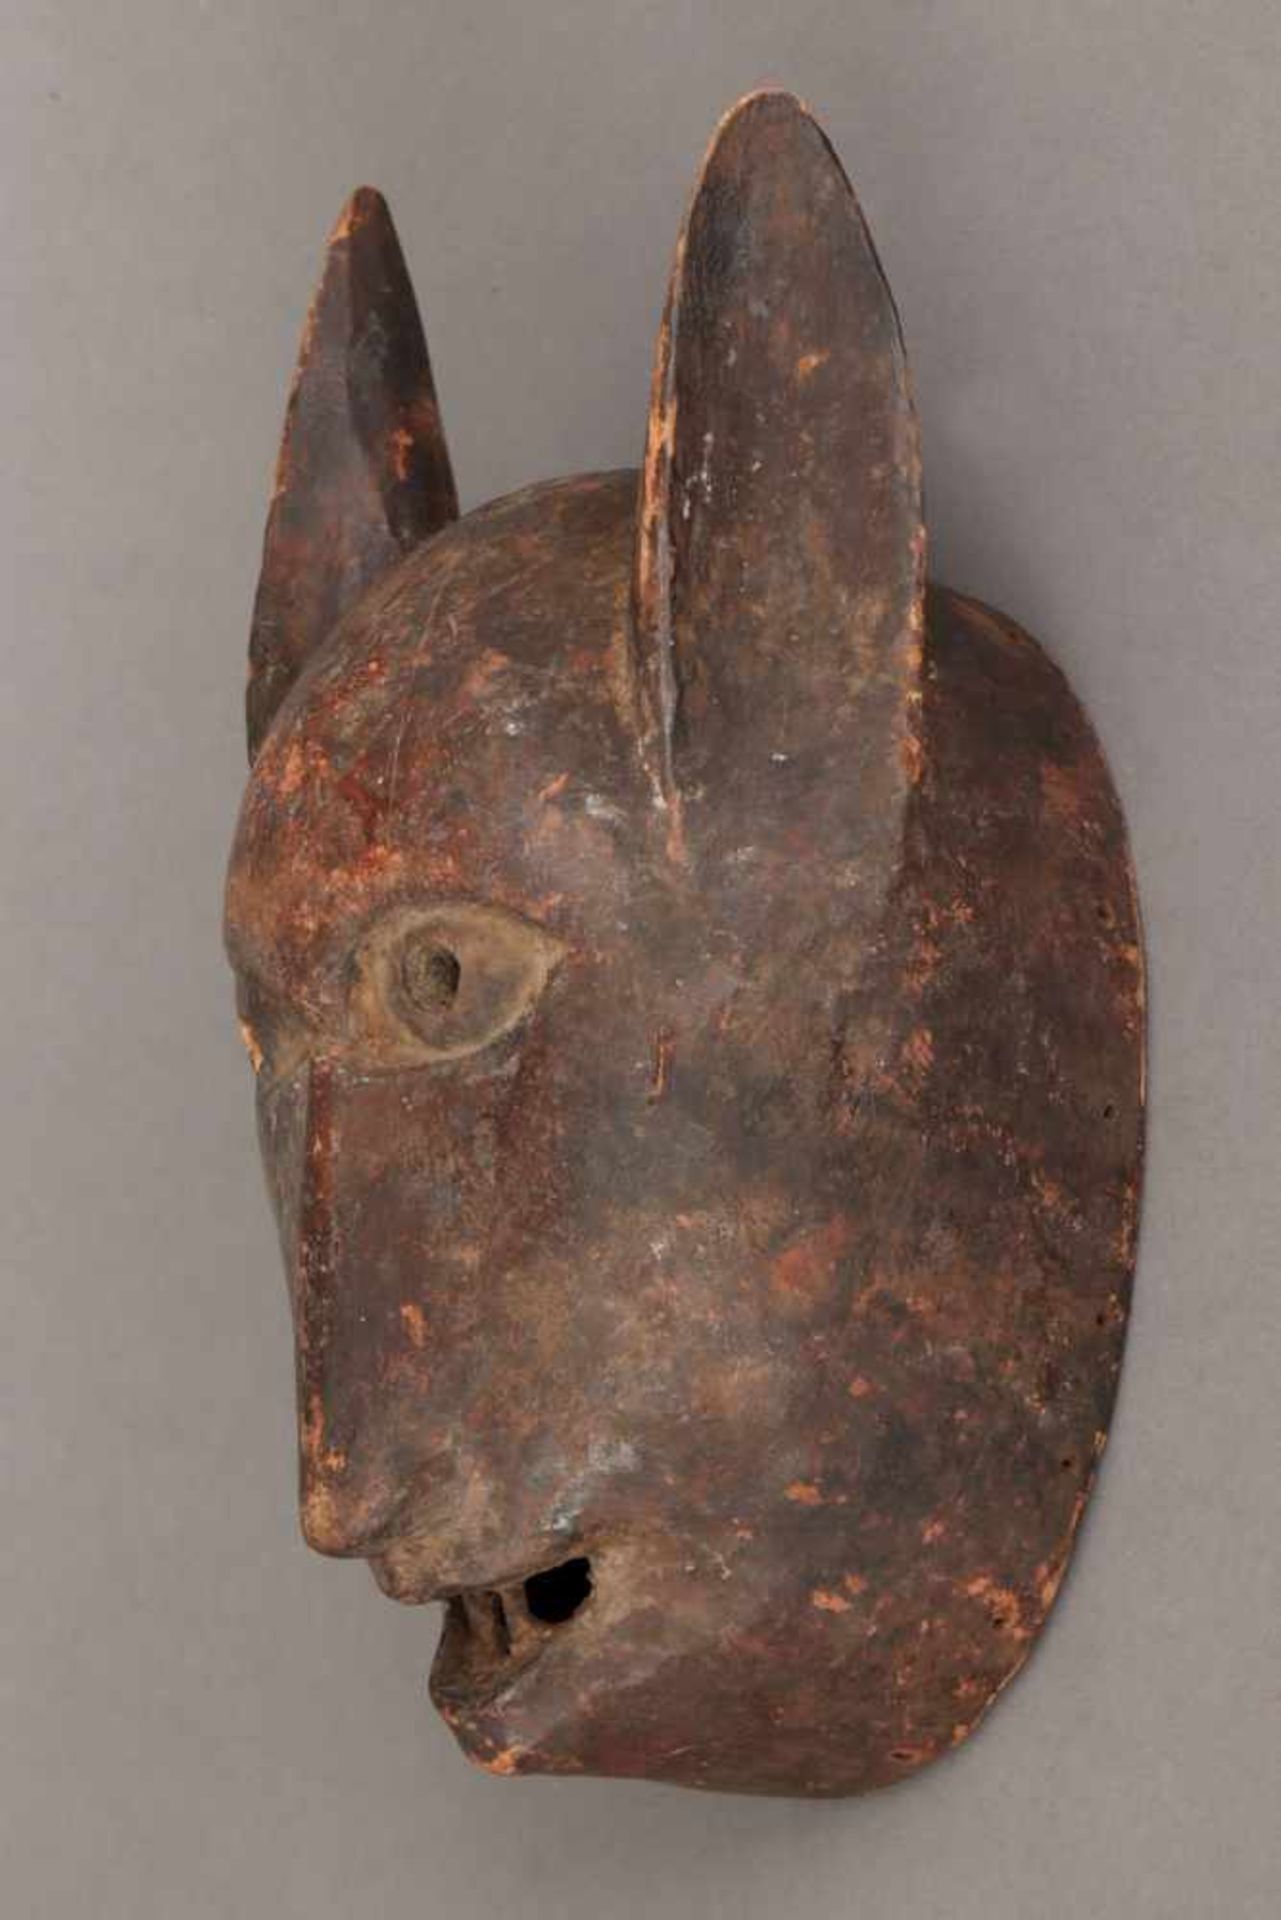 Afrikanische Tiermaske, wohl Bambara, Niger ¨Hundekopf¨, Holz geschnitzt und dunkel patiniert, - Bild 2 aus 2